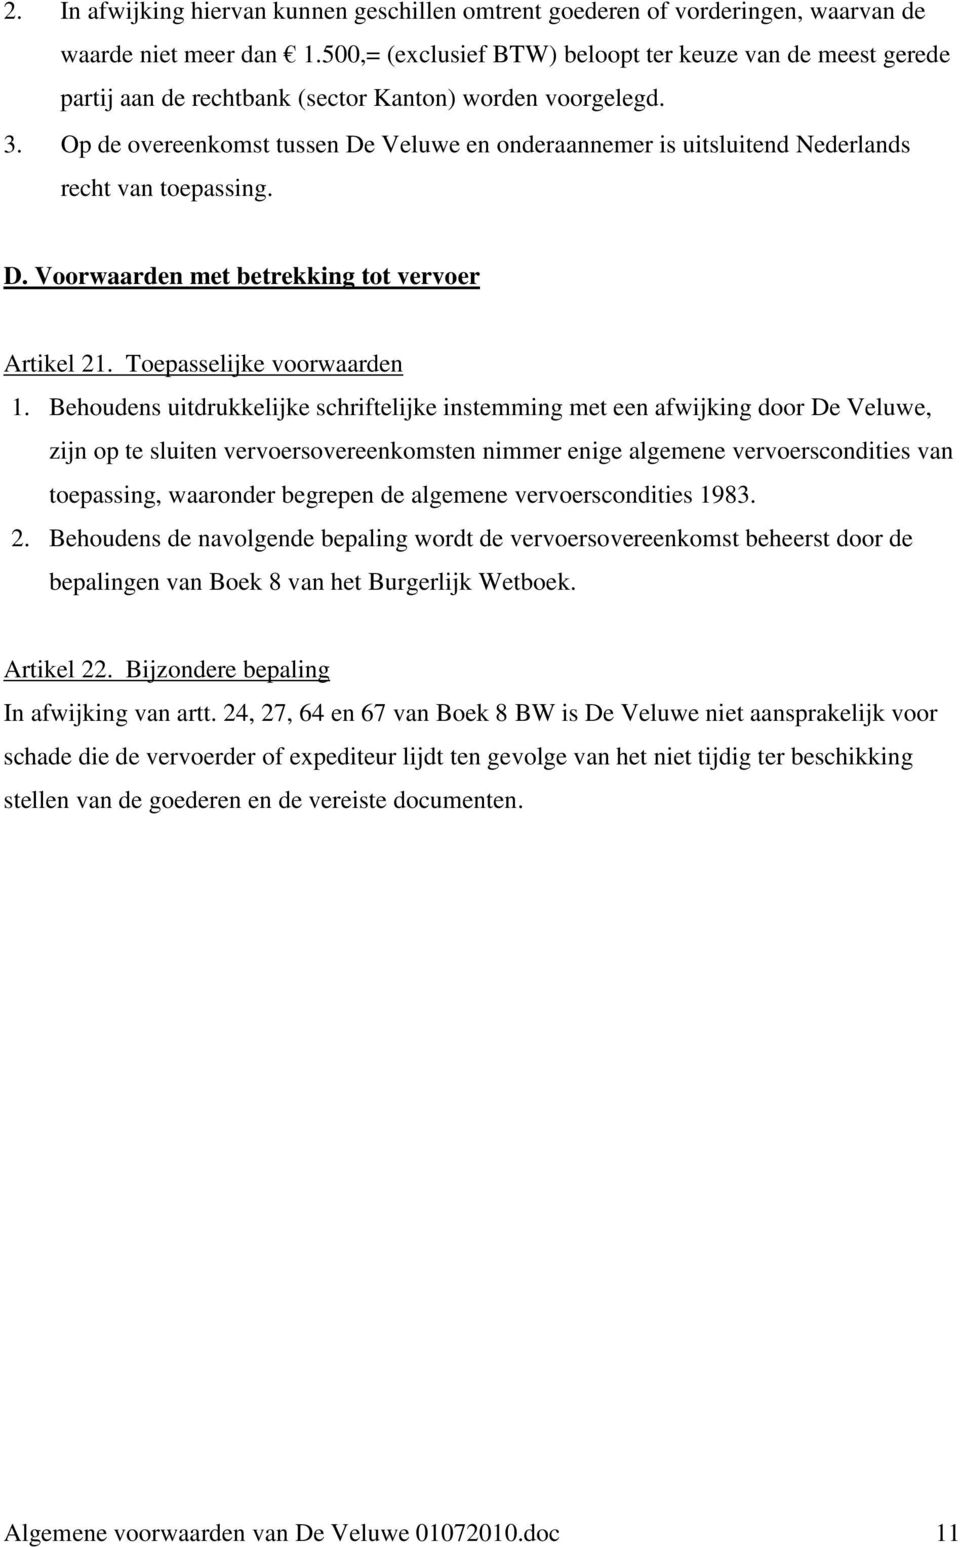 Op de overeenkomst tussen De Veluwe en onderaannemer is uitsluitend Nederlands recht van toepassing. D. Voorwaarden met betrekking tot vervoer Artikel 21. Toepasselijke voorwaarden 1.